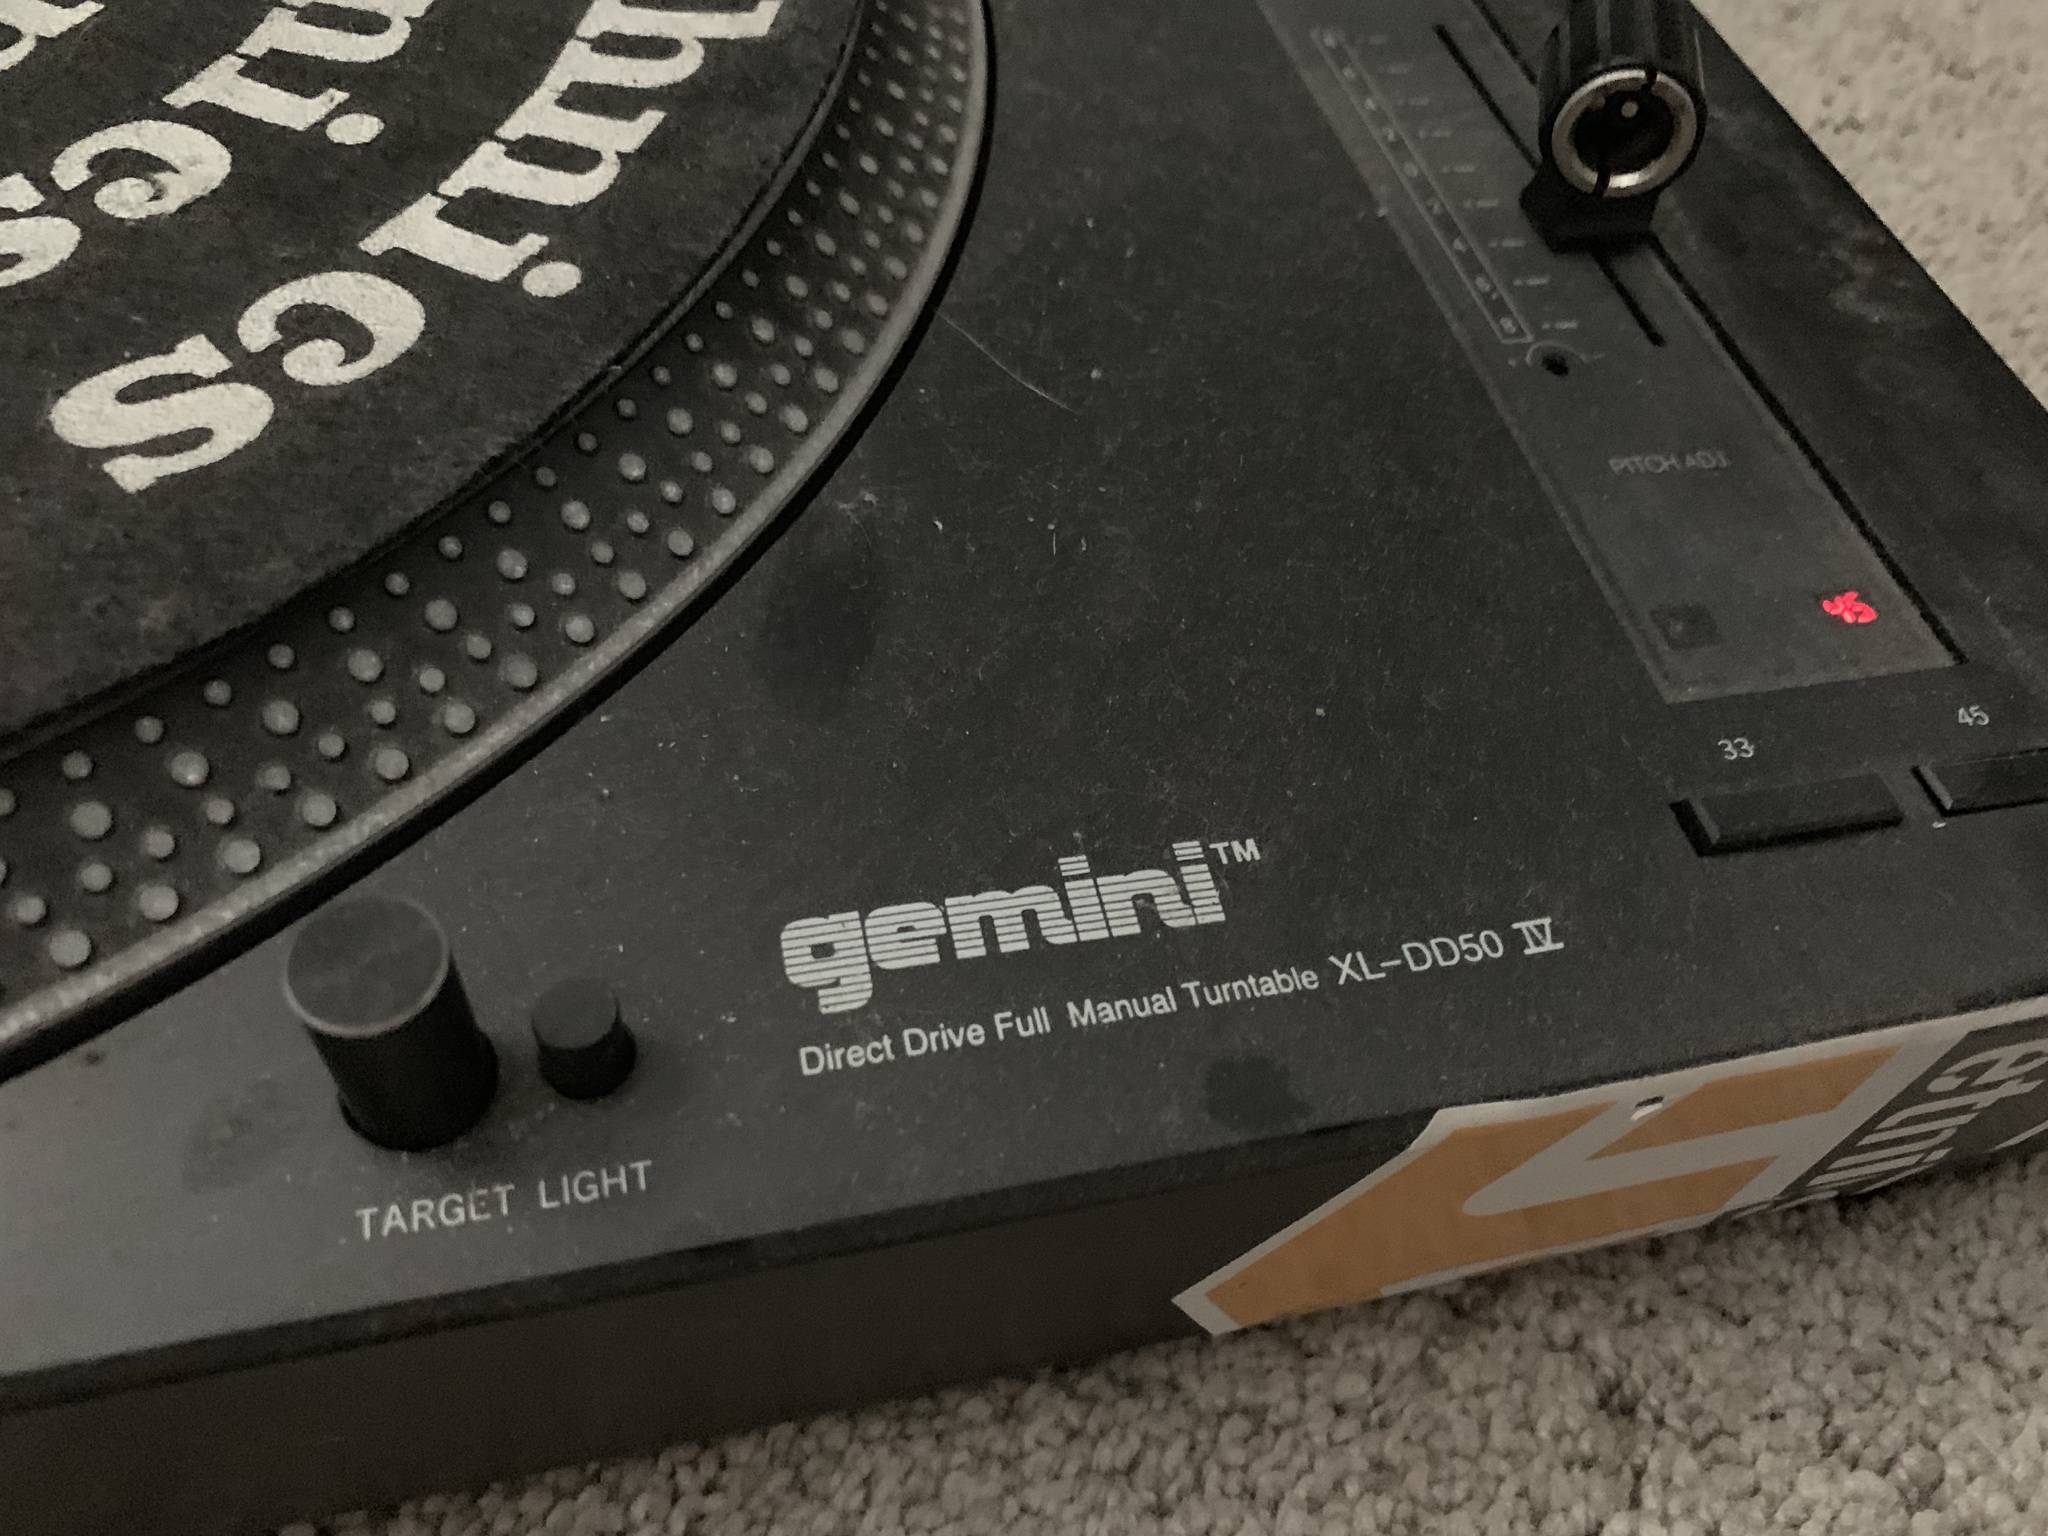 Gemini XL DD50 IV